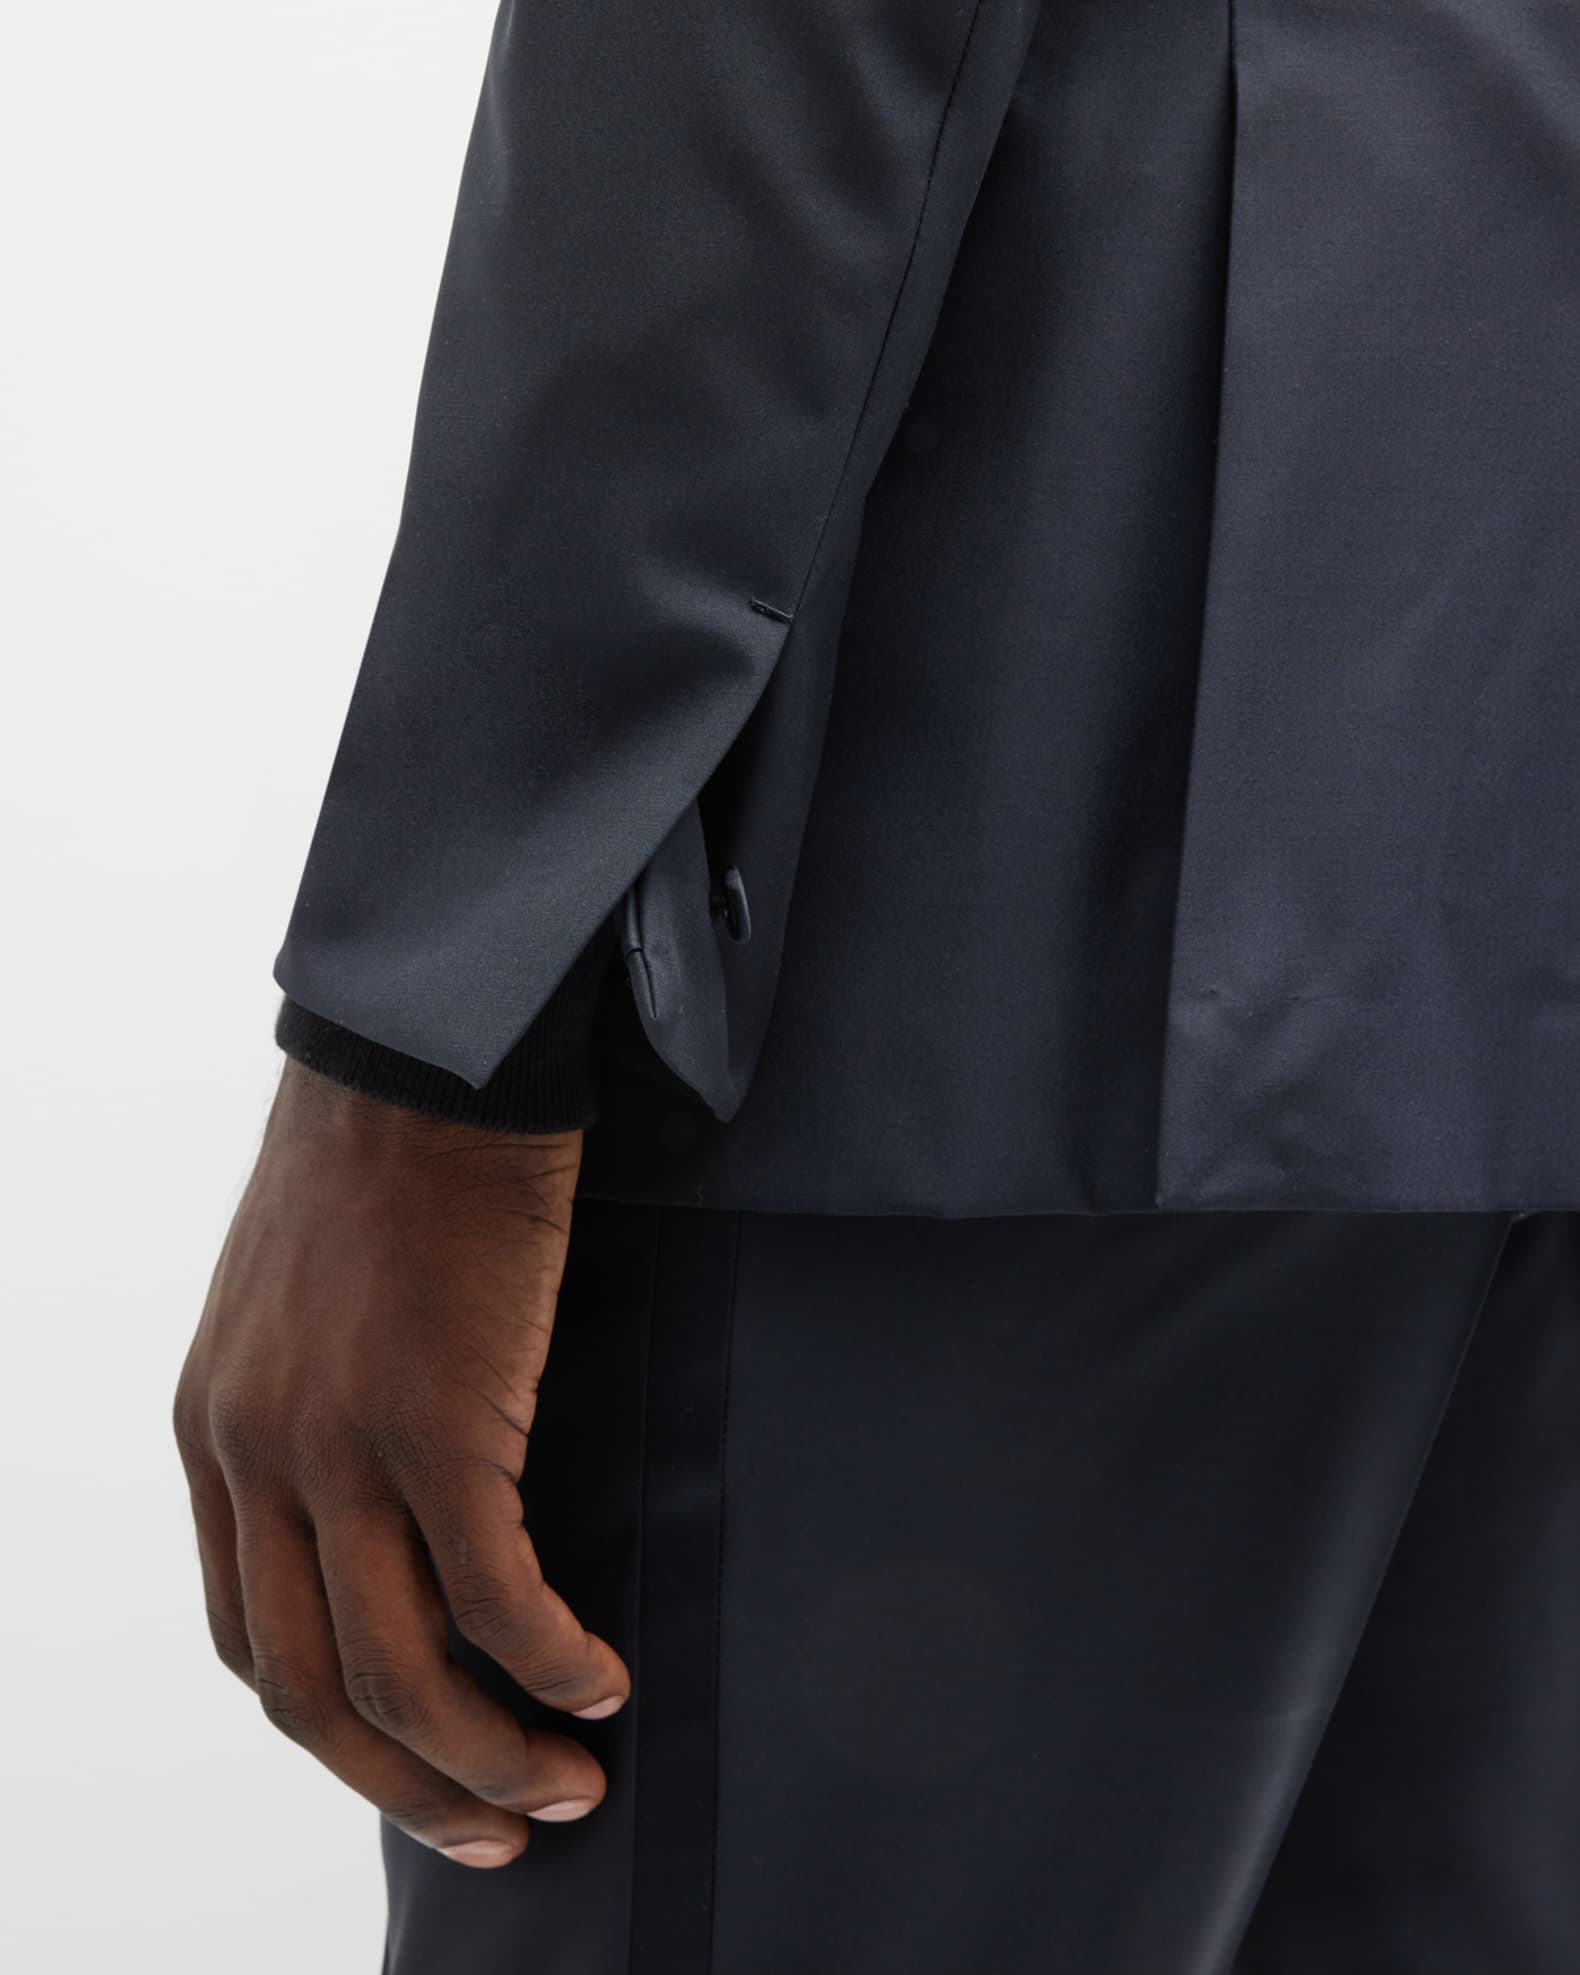 ZEGNA Men's Sartorial Wool and Silk Tuxedo | Neiman Marcus